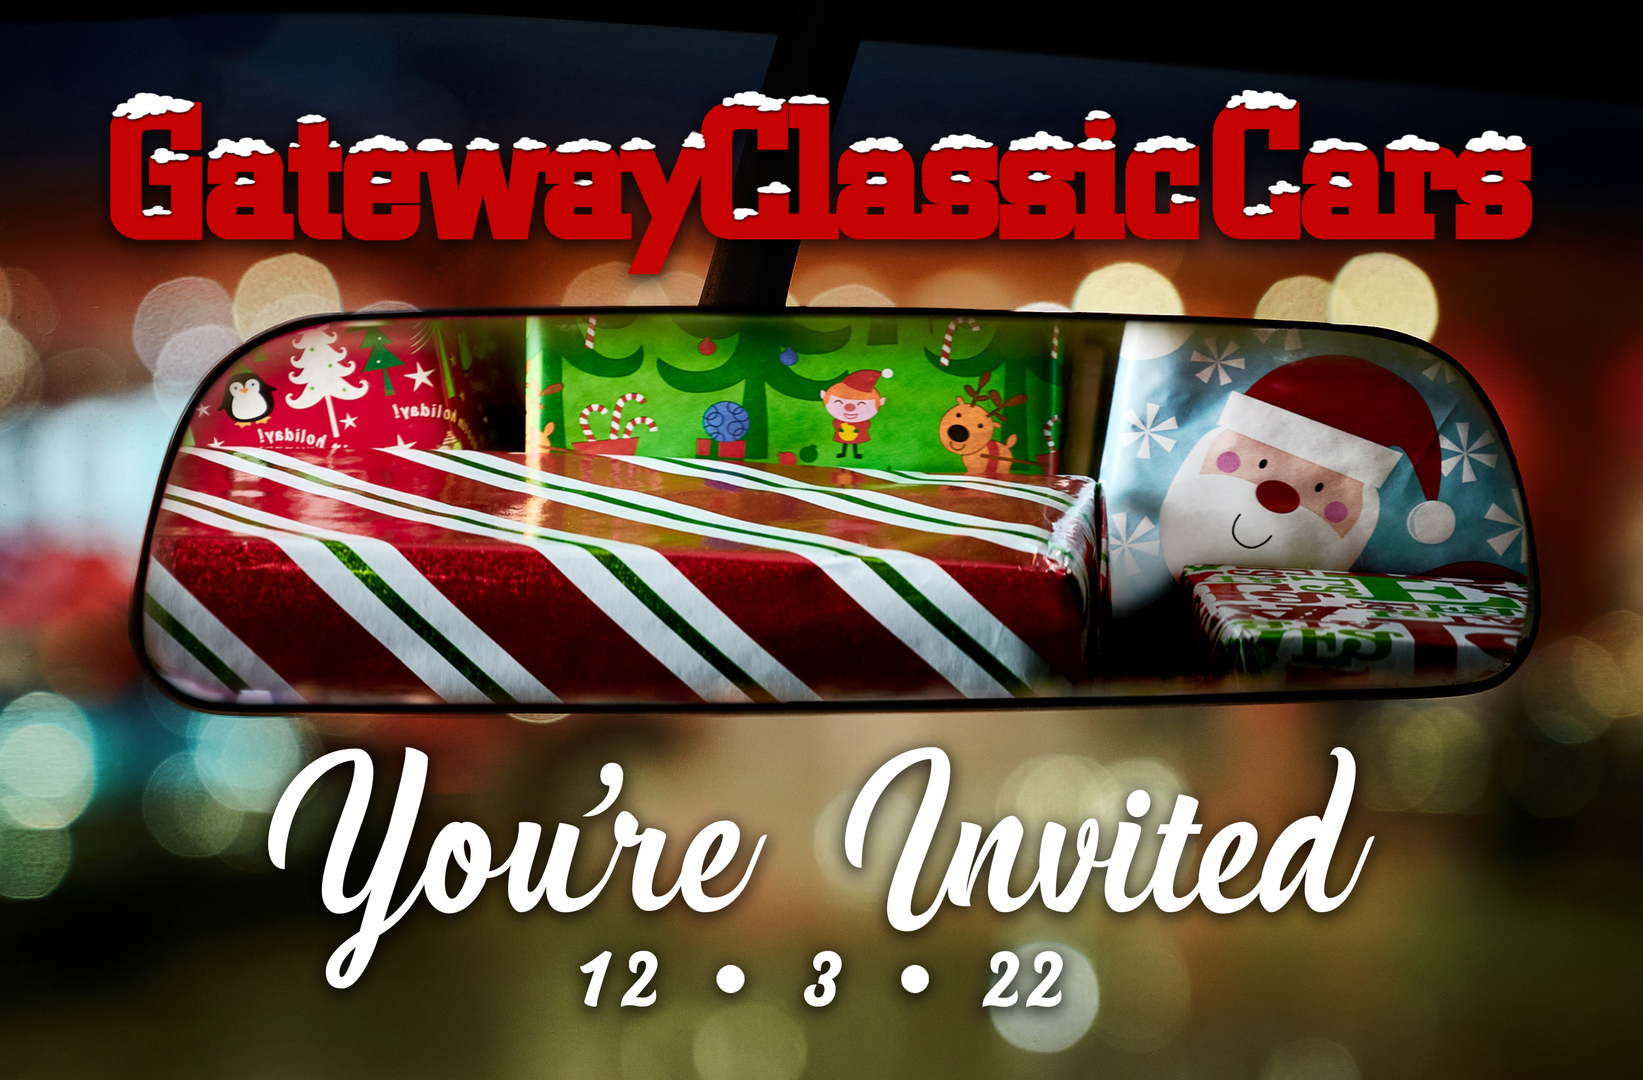 Gateway Classic Cars of Orlando - Holiday Party, Lake Mary, Florida, United States